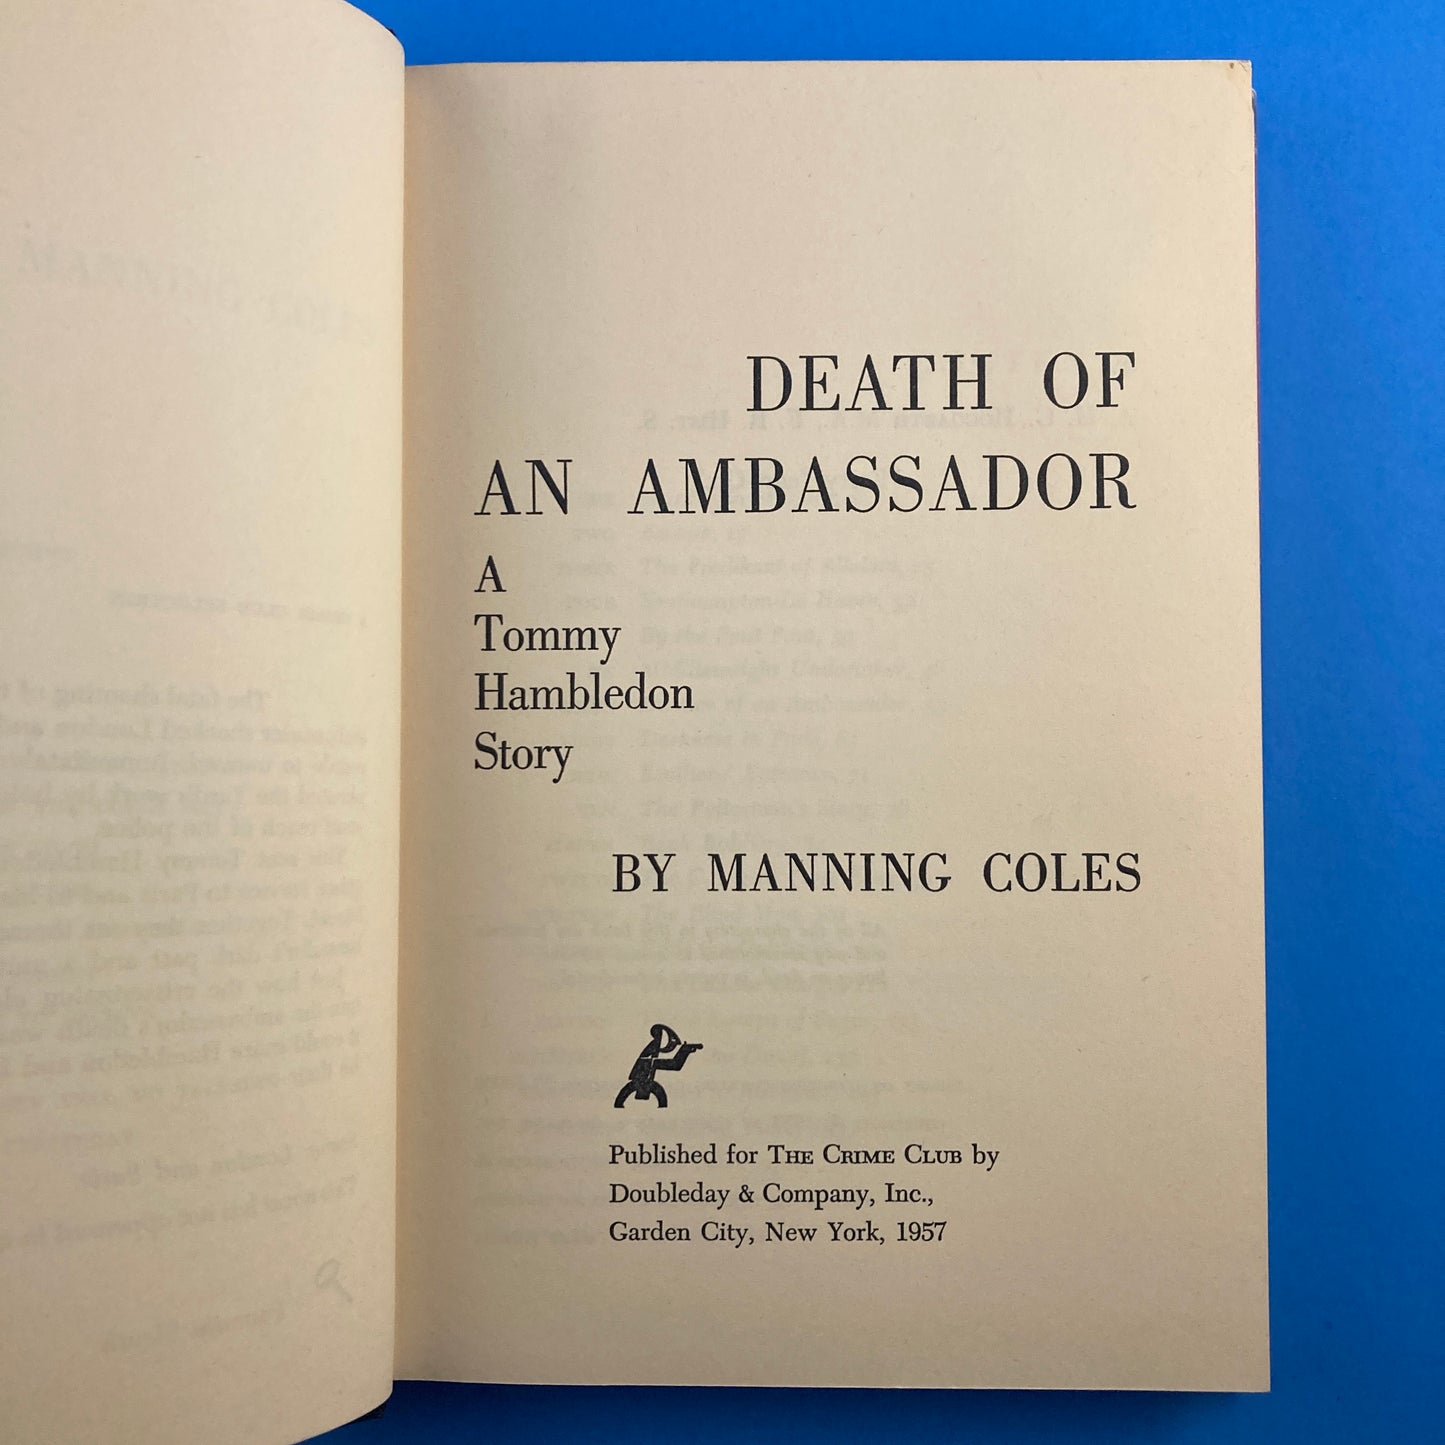 Death of an Ambassador